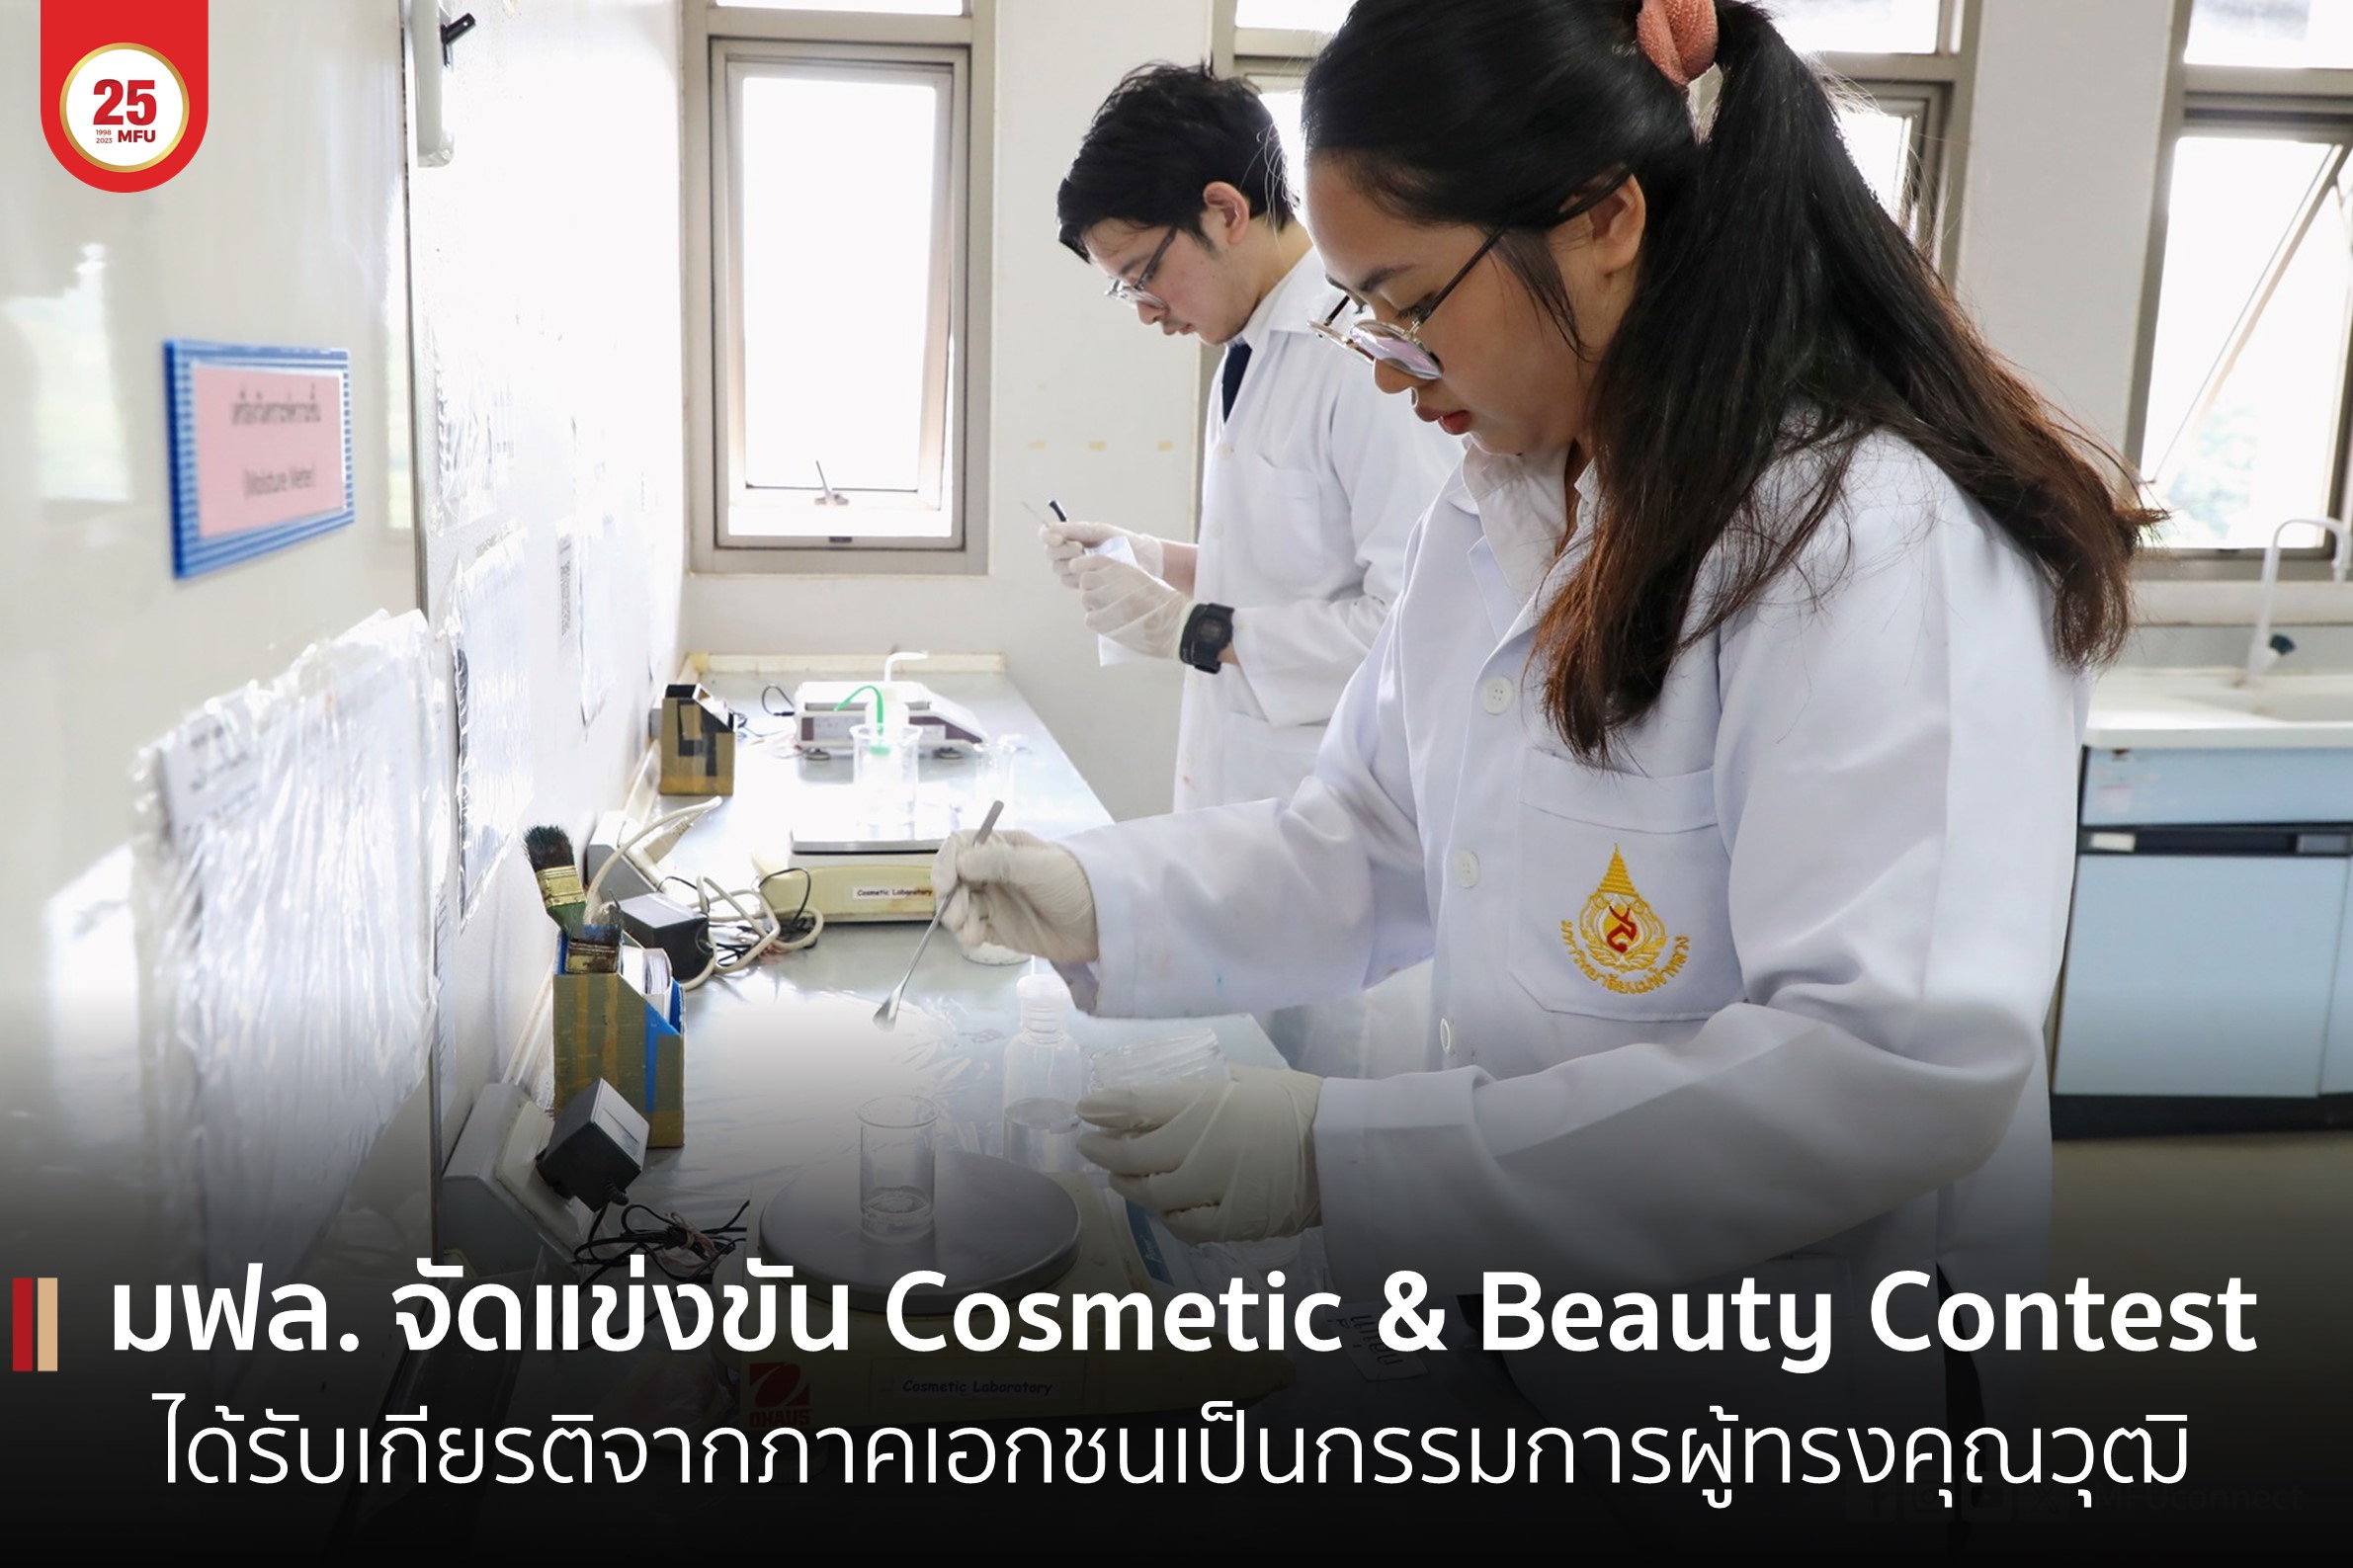 มฟล. จัดการแข่งขันทักษะวิทยาศาสตร์เครื่องสำอางและเทคโนโลยีความงาม Cosmetic & Beauty Contest ได้รับเกียรติจากภาคเอกชนเป็นกรรมการผู้ทรงคุณวุฒิ